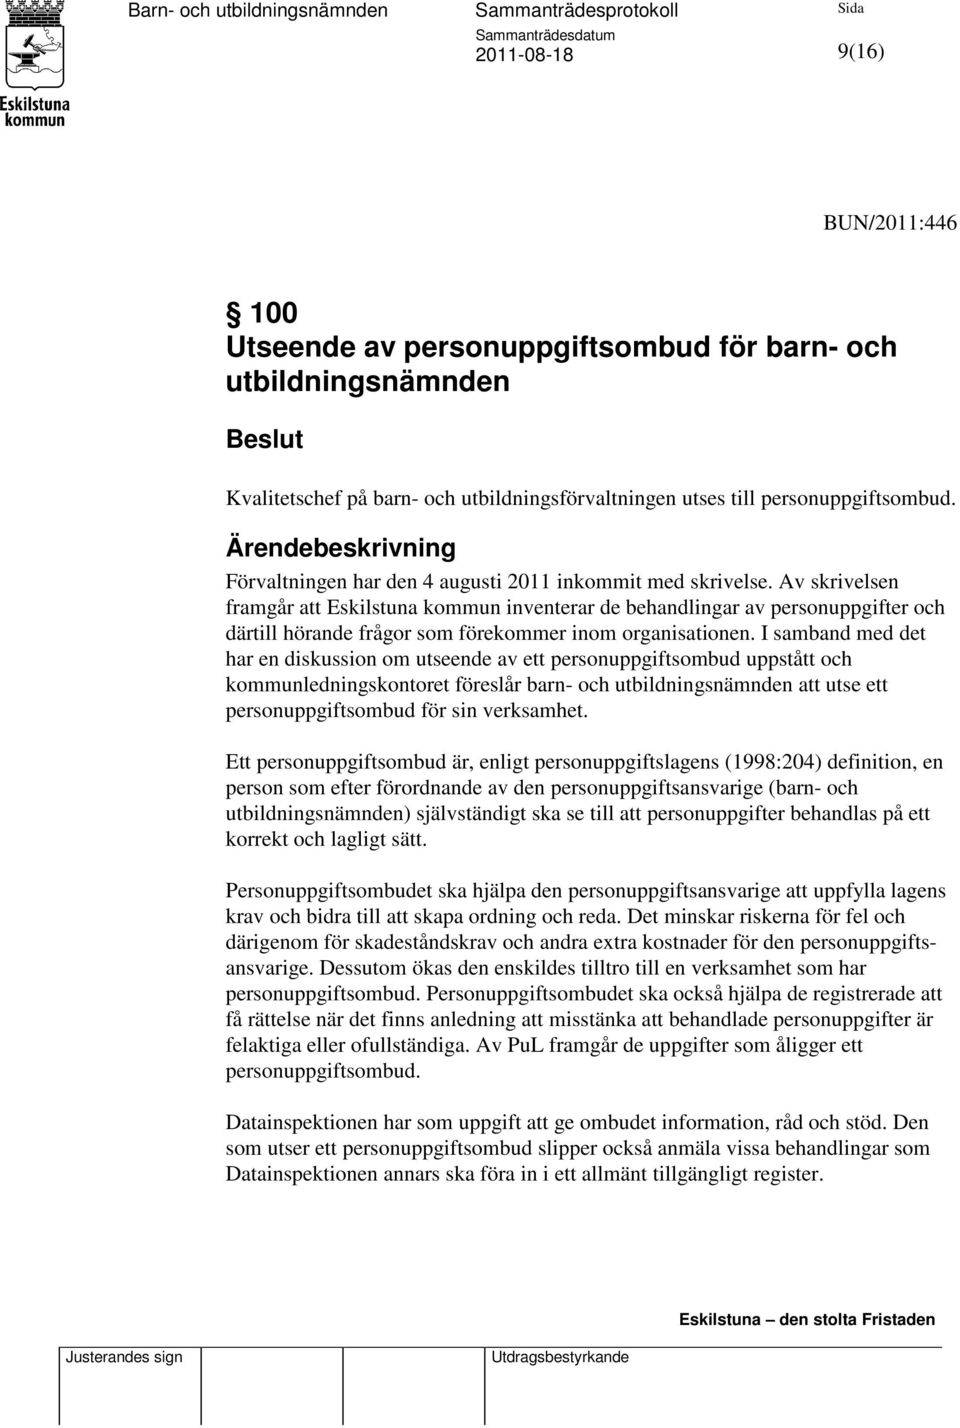 Av skrivelsen framgår att Eskilstuna kommun inventerar de behandlingar av personuppgifter och därtill hörande frågor som förekommer inom organisationen.